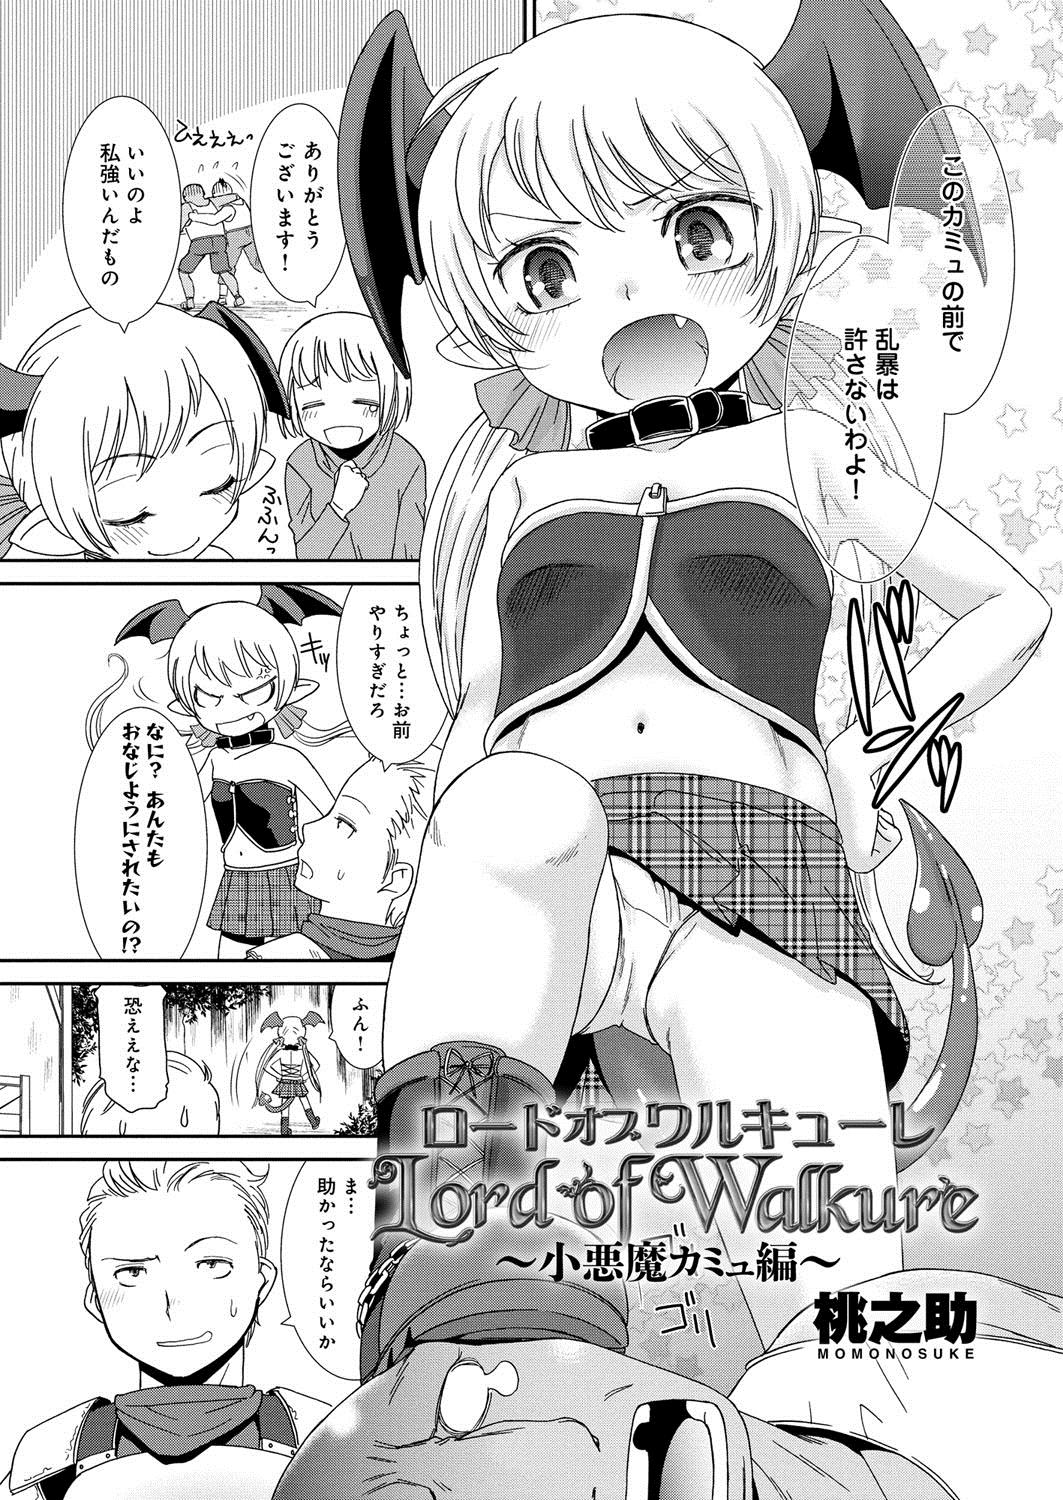 Dom [Anthology] Lord of Valkyrie Adult - Comic Anthology R18 Handakara Saigomade... Mou, Kishi-sama no Ecchi♪ Facebook - Page 8